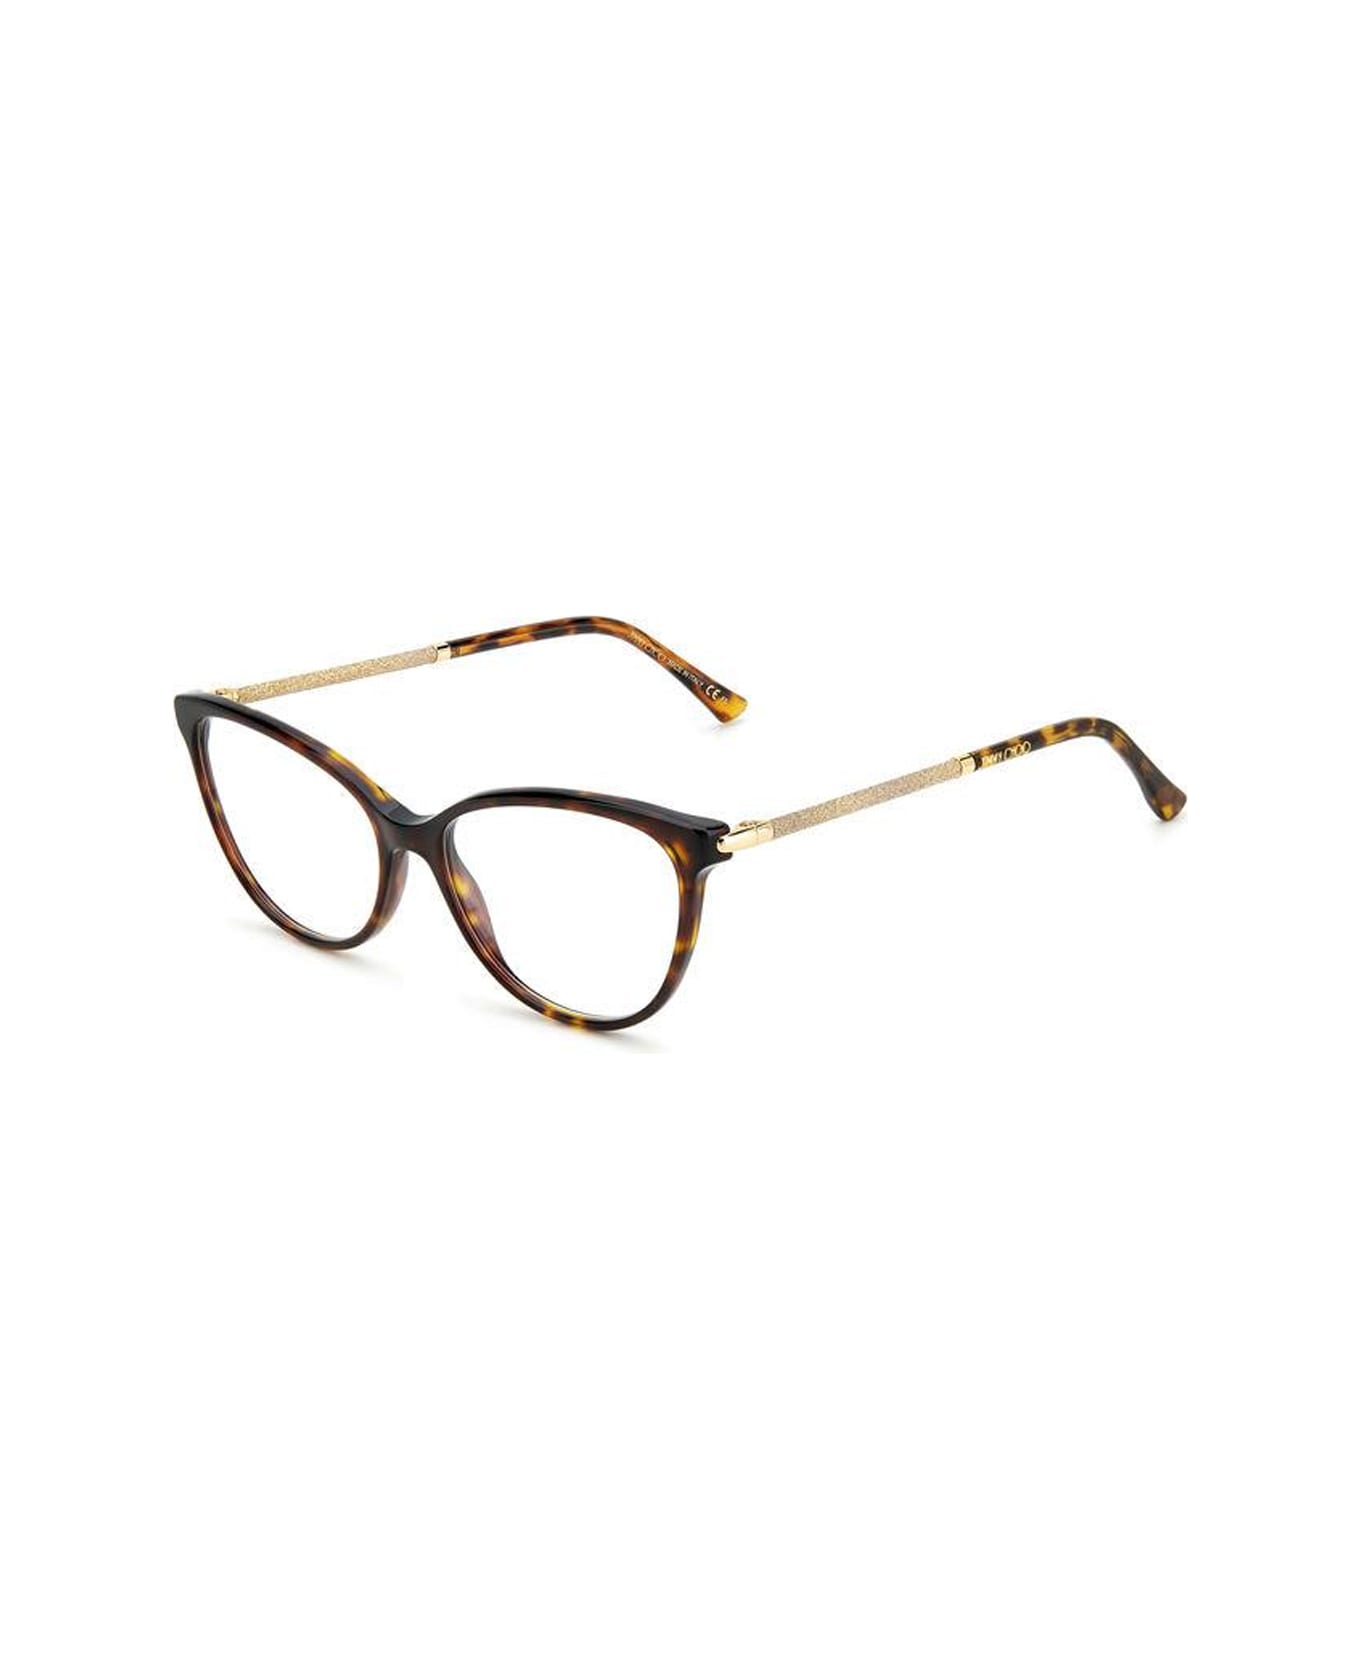 Jimmy Choo Eyewear Jc330 086/16 Havana Glasses - Marrone